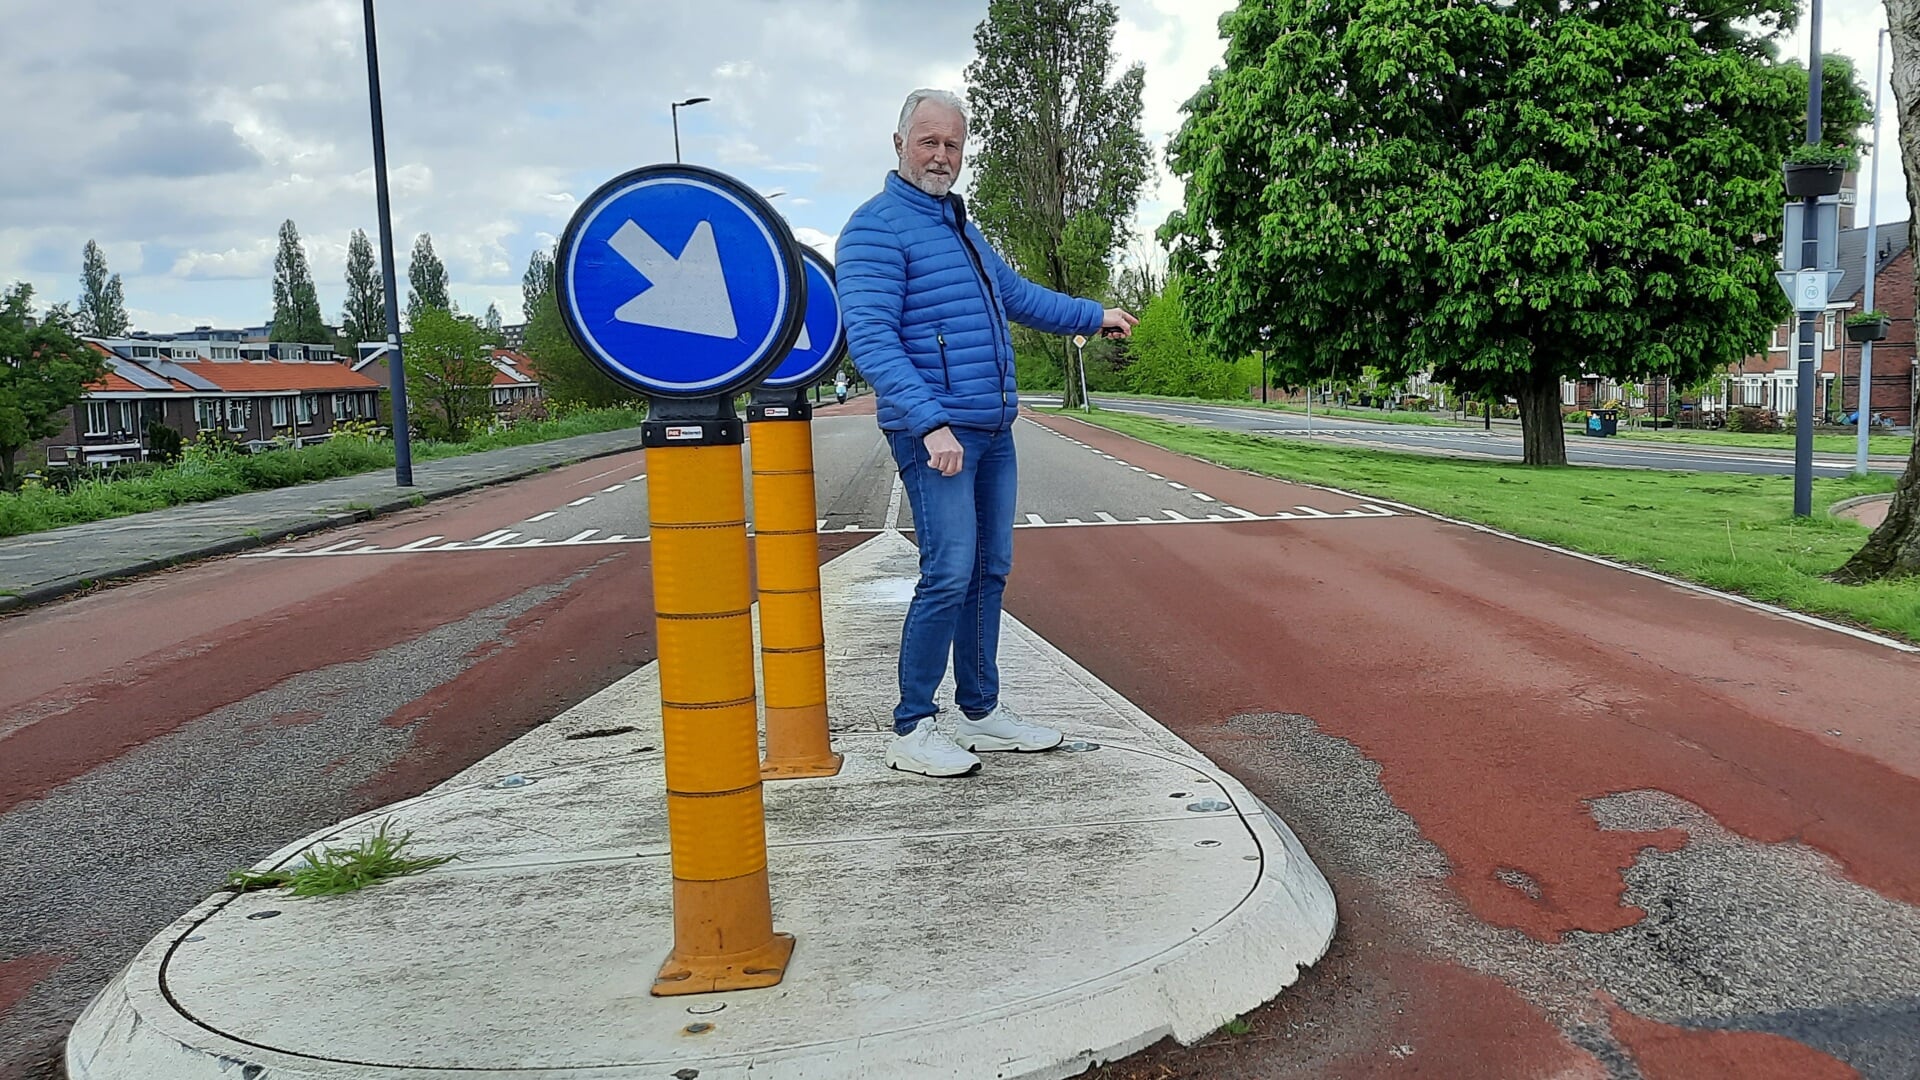 Gemeenteraadslid Marco van Unen wijst naar het ontbreken van de belijning naast de aangebrachte middeneilanden, wat voor een onveilige verkeerssituatie zorgt voor fietsers.